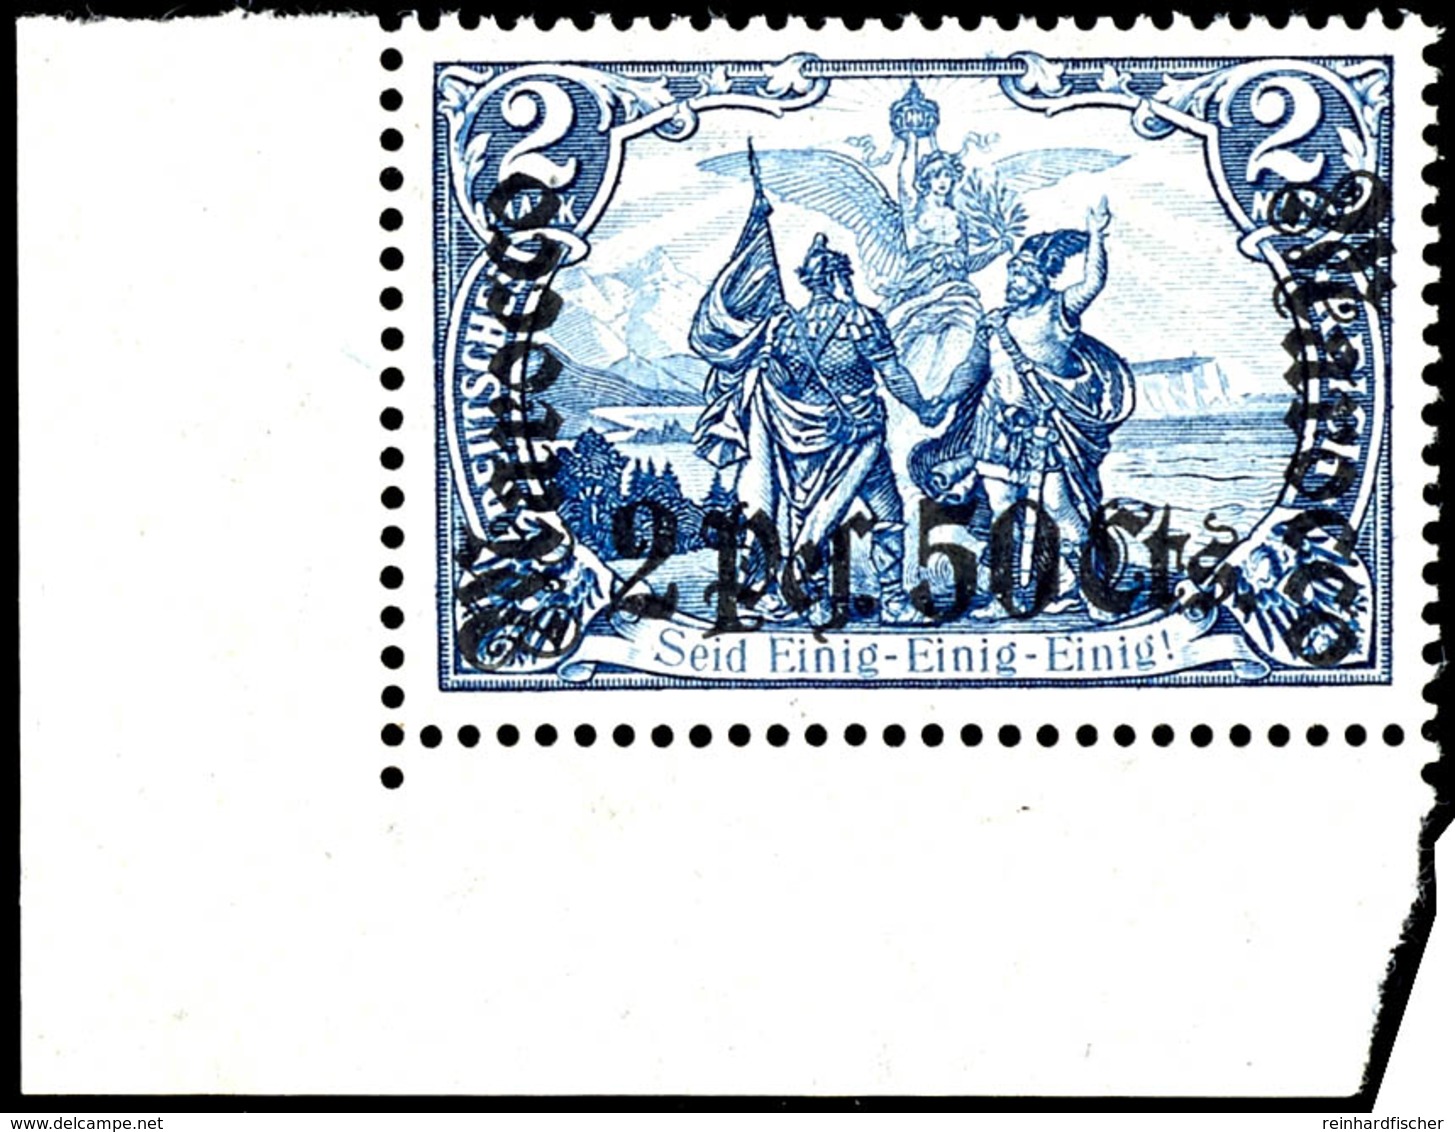 2 Mark Deutsches Reich Mit Wasserzeichen, Aufdruck "Marocco 2 Pes. 50 Cts.", Postfrisches Kabinettstück Vom Linken, Unte - Maroc (bureaux)